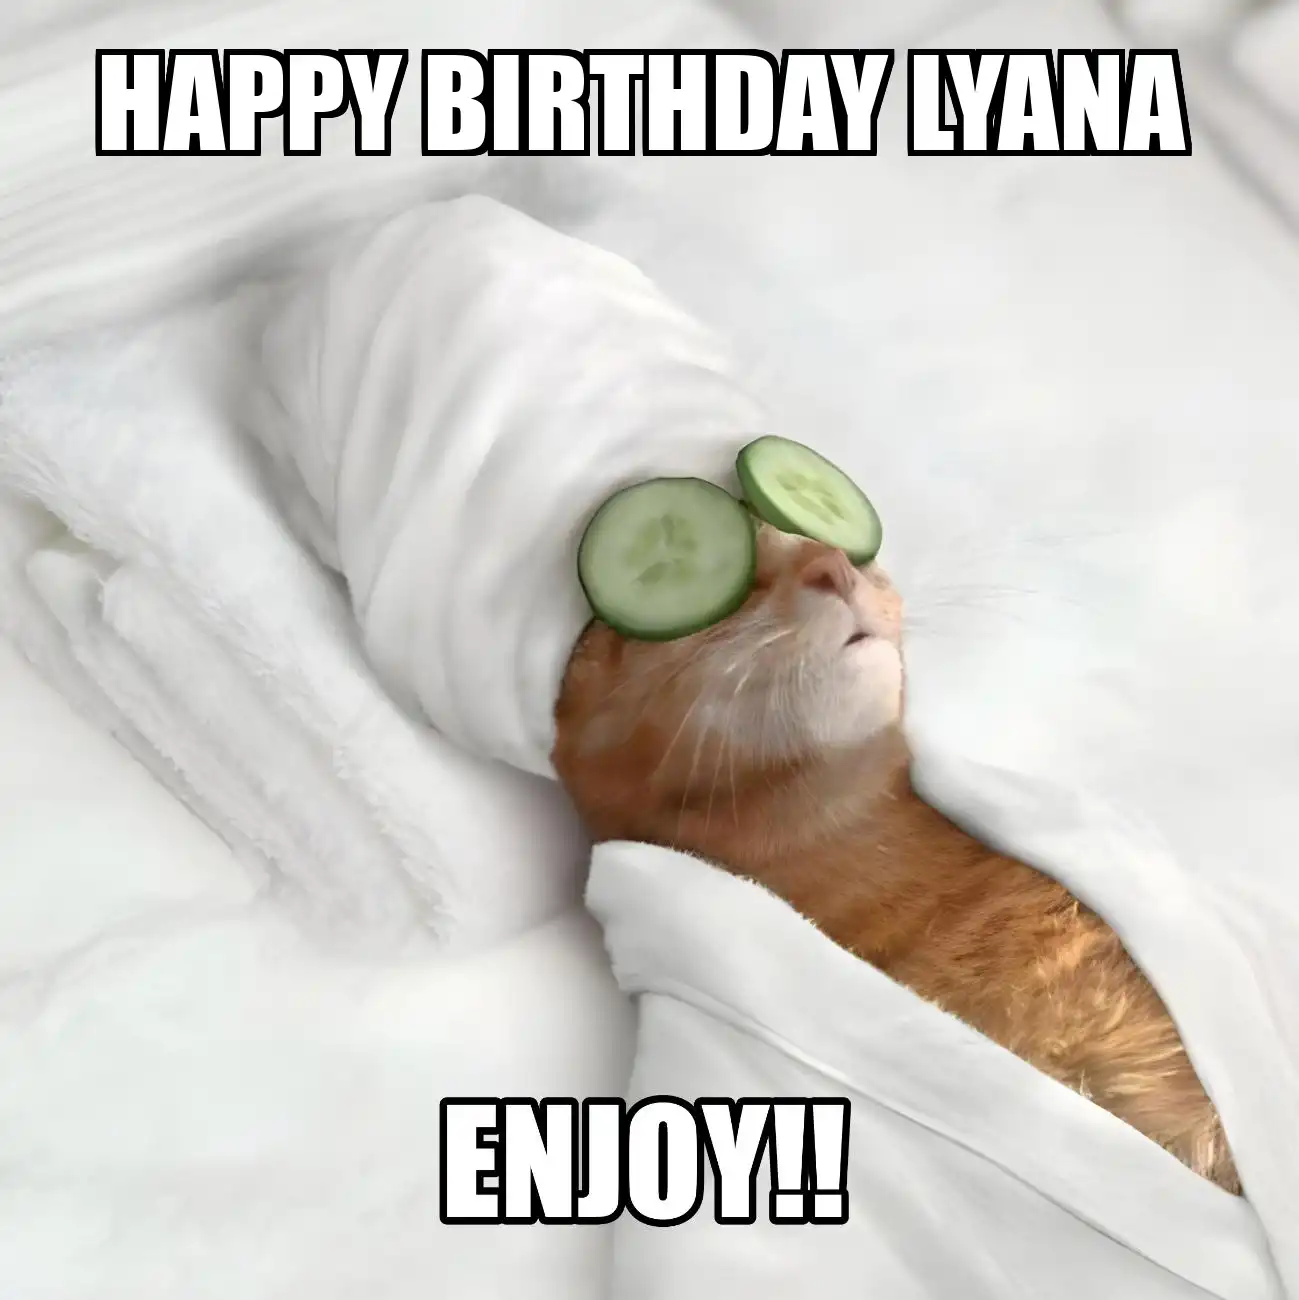 Happy Birthday Lyana Enjoy Cat Meme